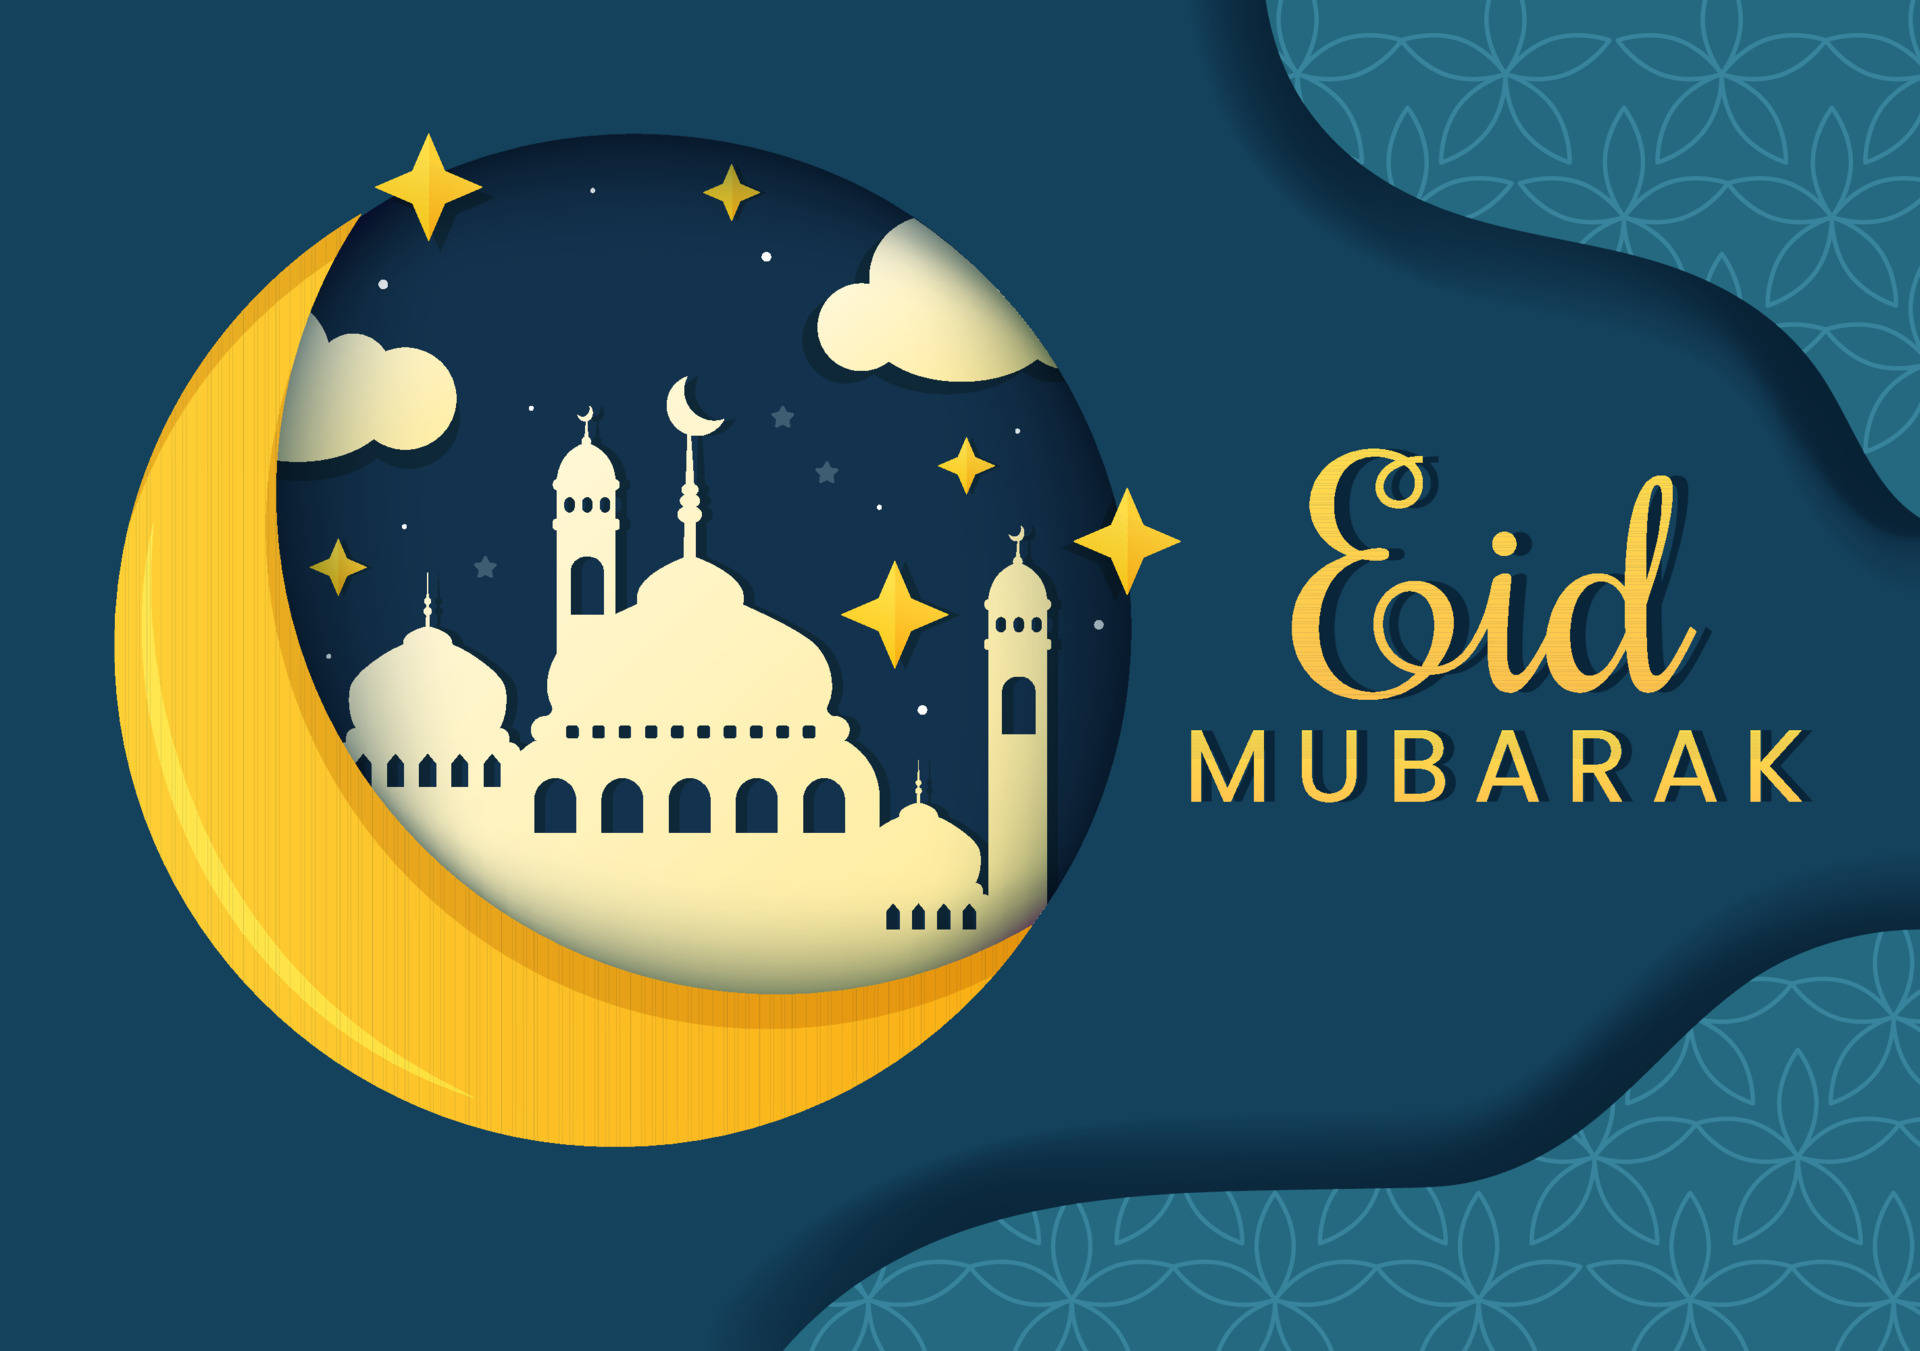 Caption: Celebrate Togetherness This Eid Mubarak